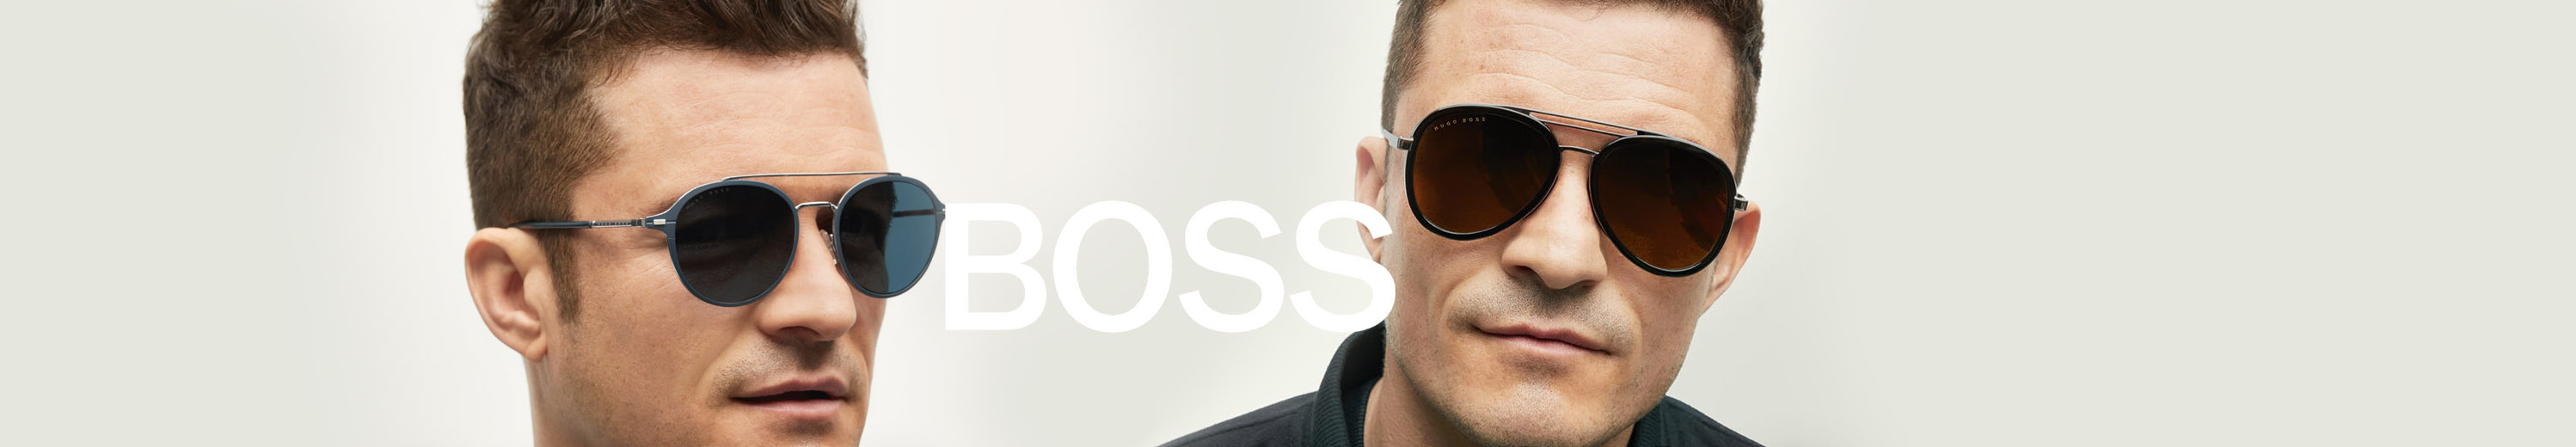 BOSS Sunglasses for Men